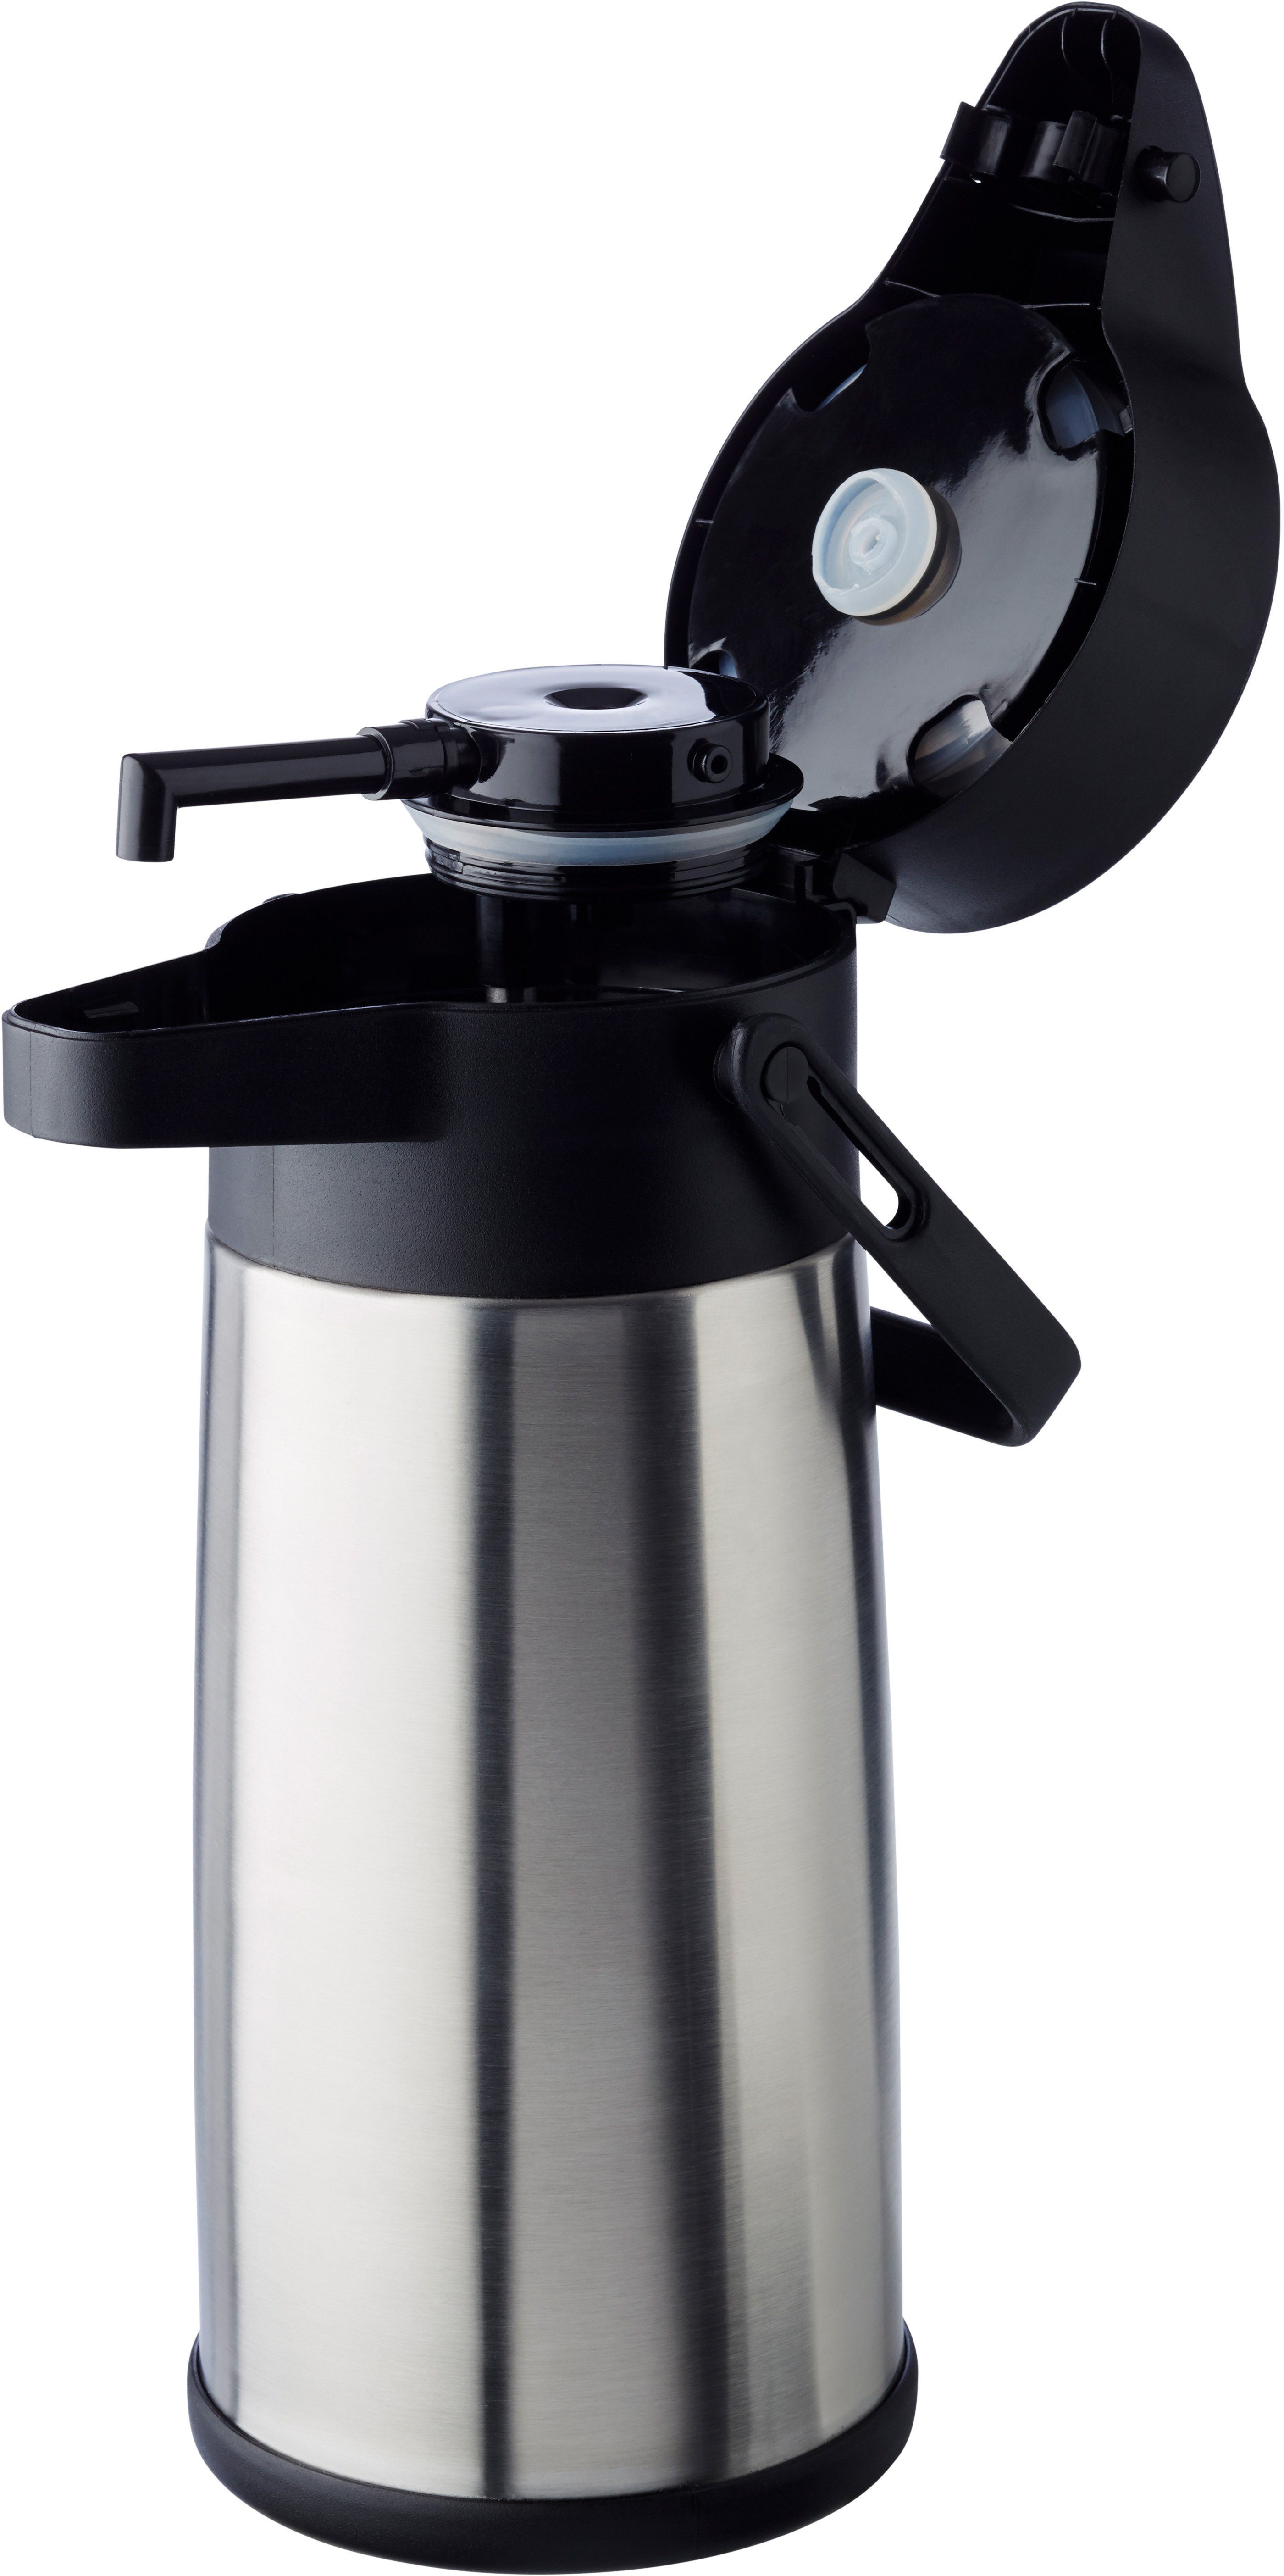 APS Pump-Isolierkanne Budget, bis doppelwandige Tassen für Isolierung Dreh-Pumpknopf, l, 2,2 Kaffee, zu 17